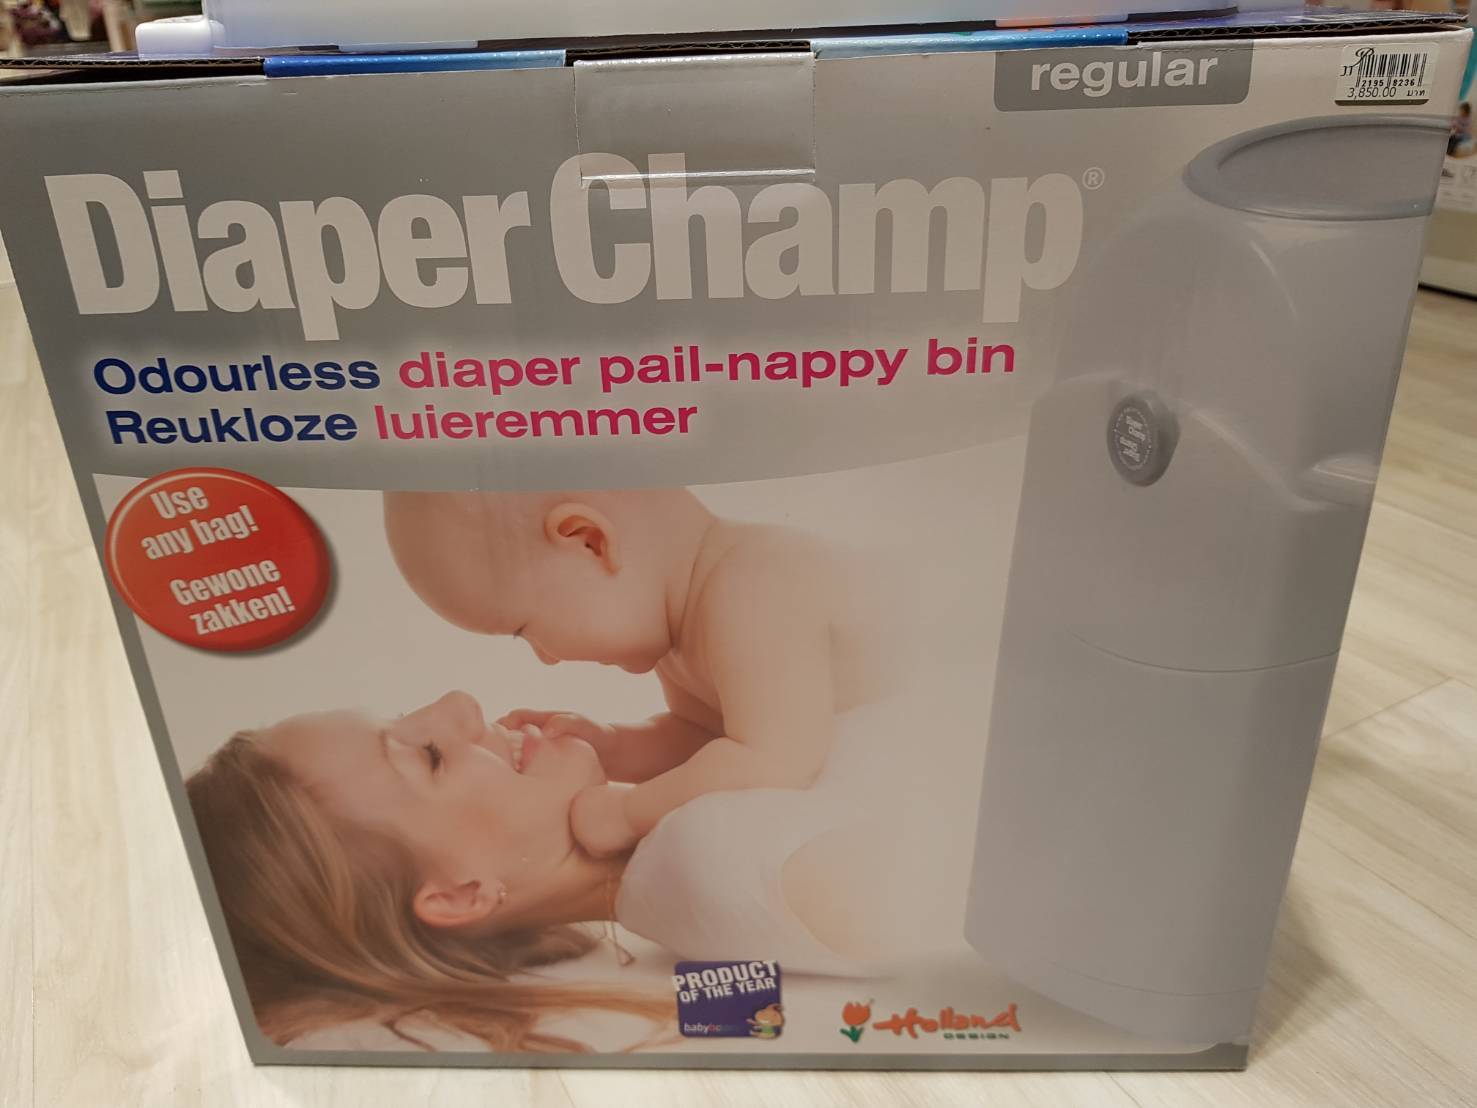 Diaper Champ : ถังเก็บผ้าอ้อม Diaper Champ (รุ่น414)